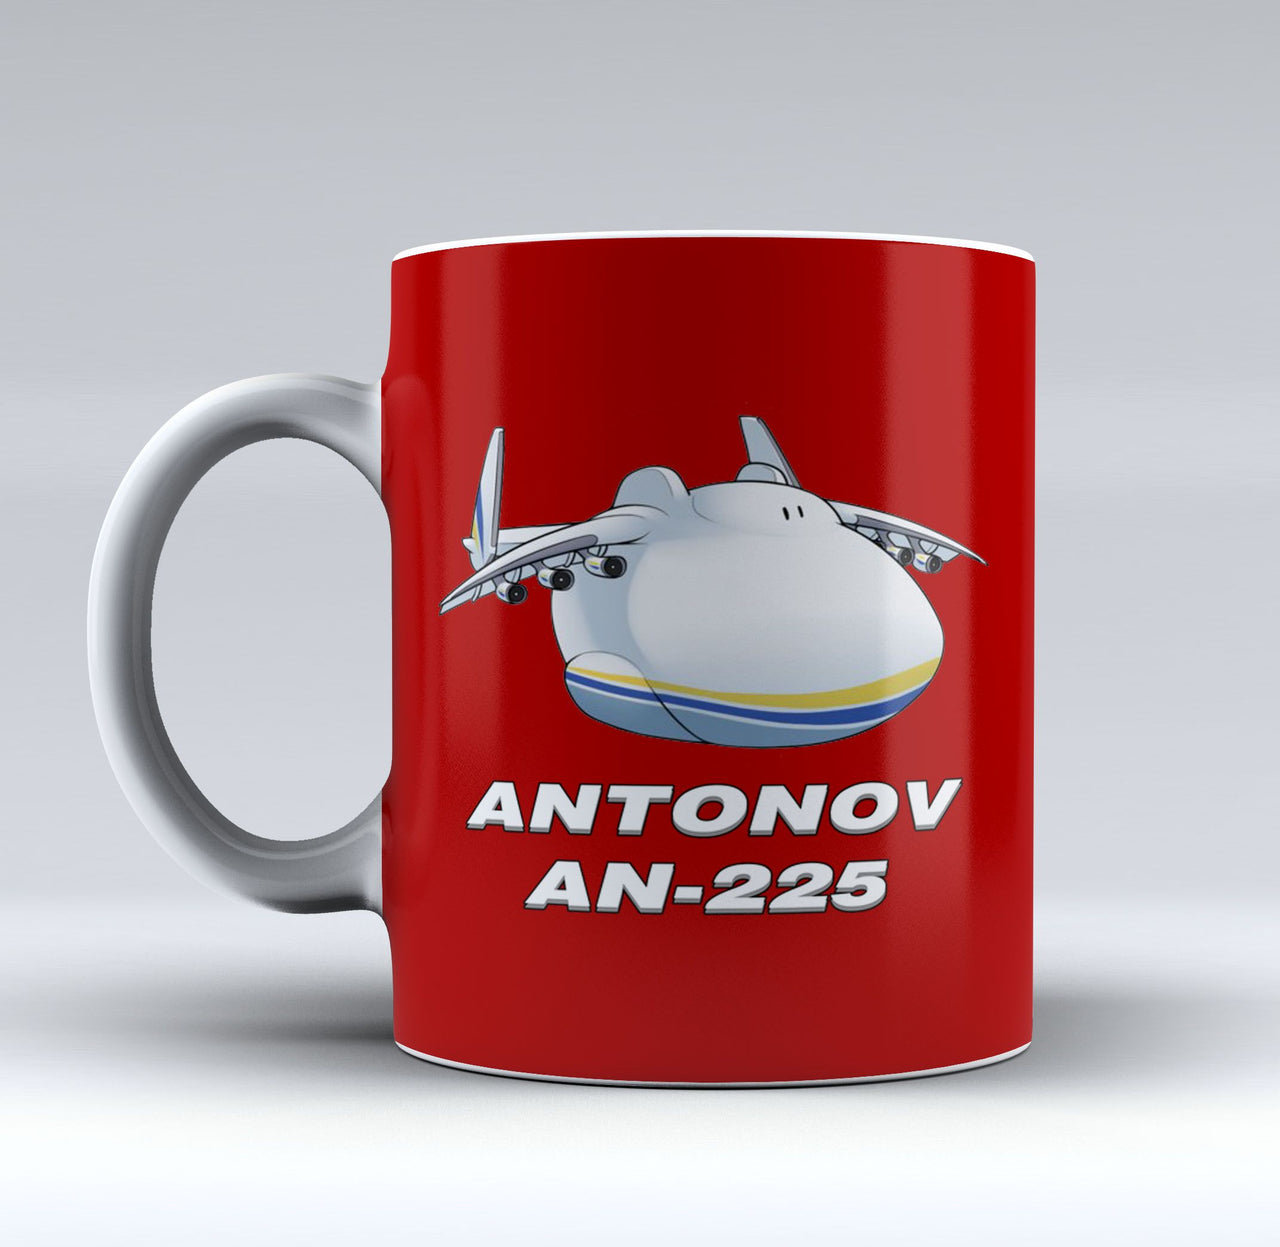 Antonov AN-225 (21) Designed Mugs